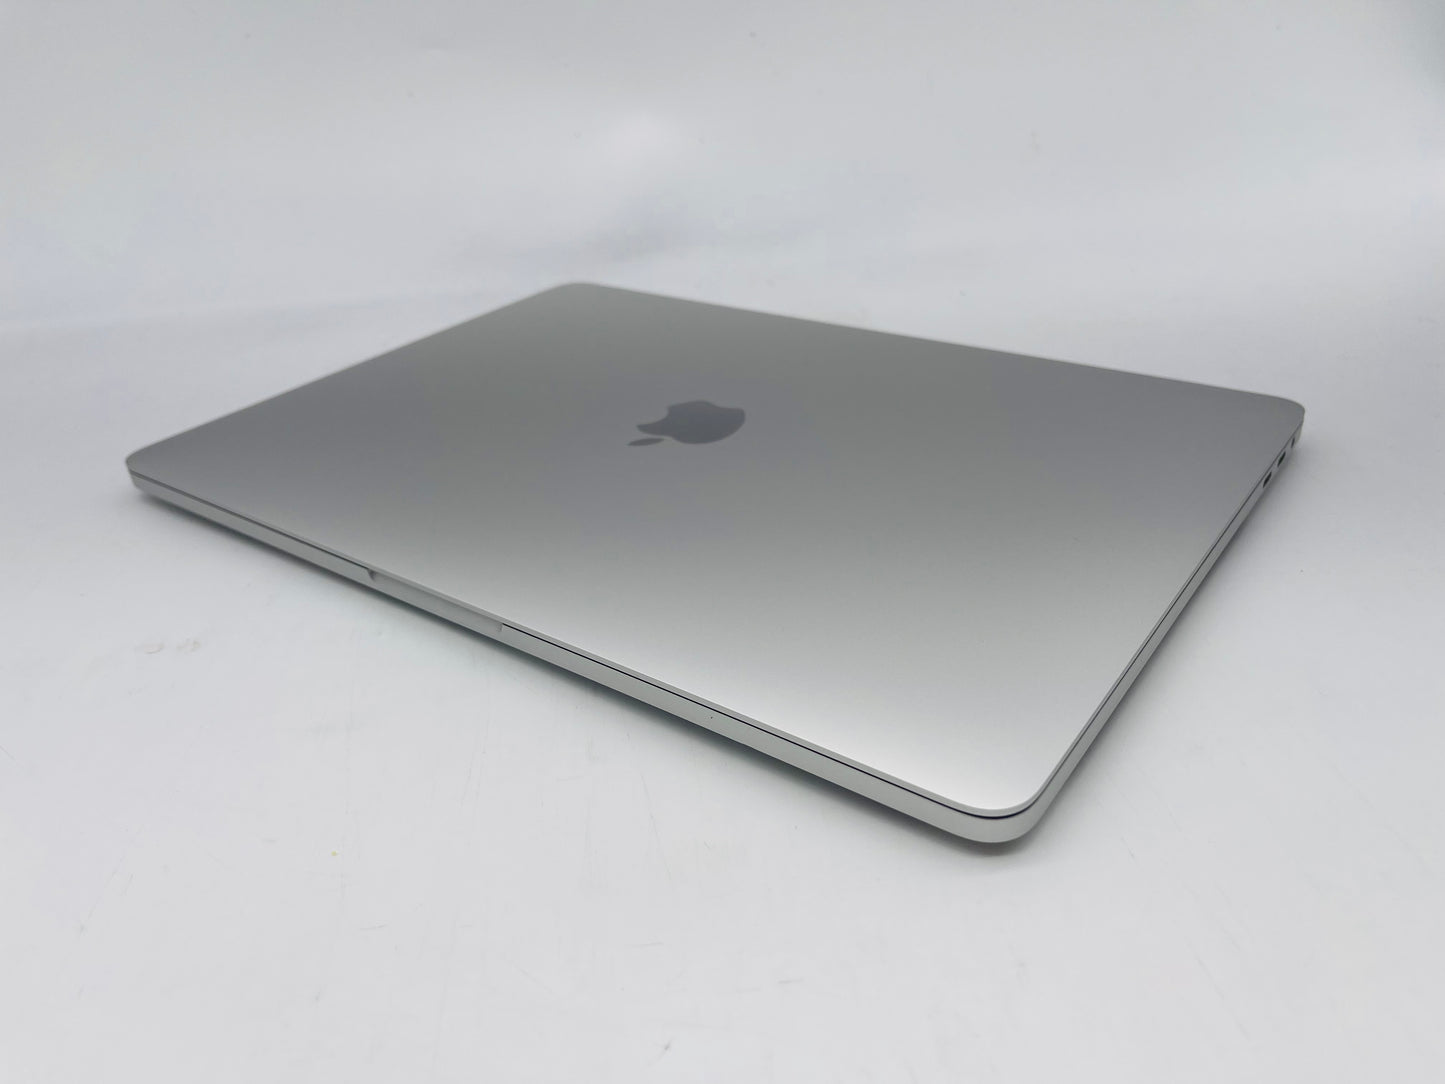 Apple 2020 MacBook Pro 13 in 2.0GHz i5 16GB RAM 512GB SSD IIPG1536 - Excellent